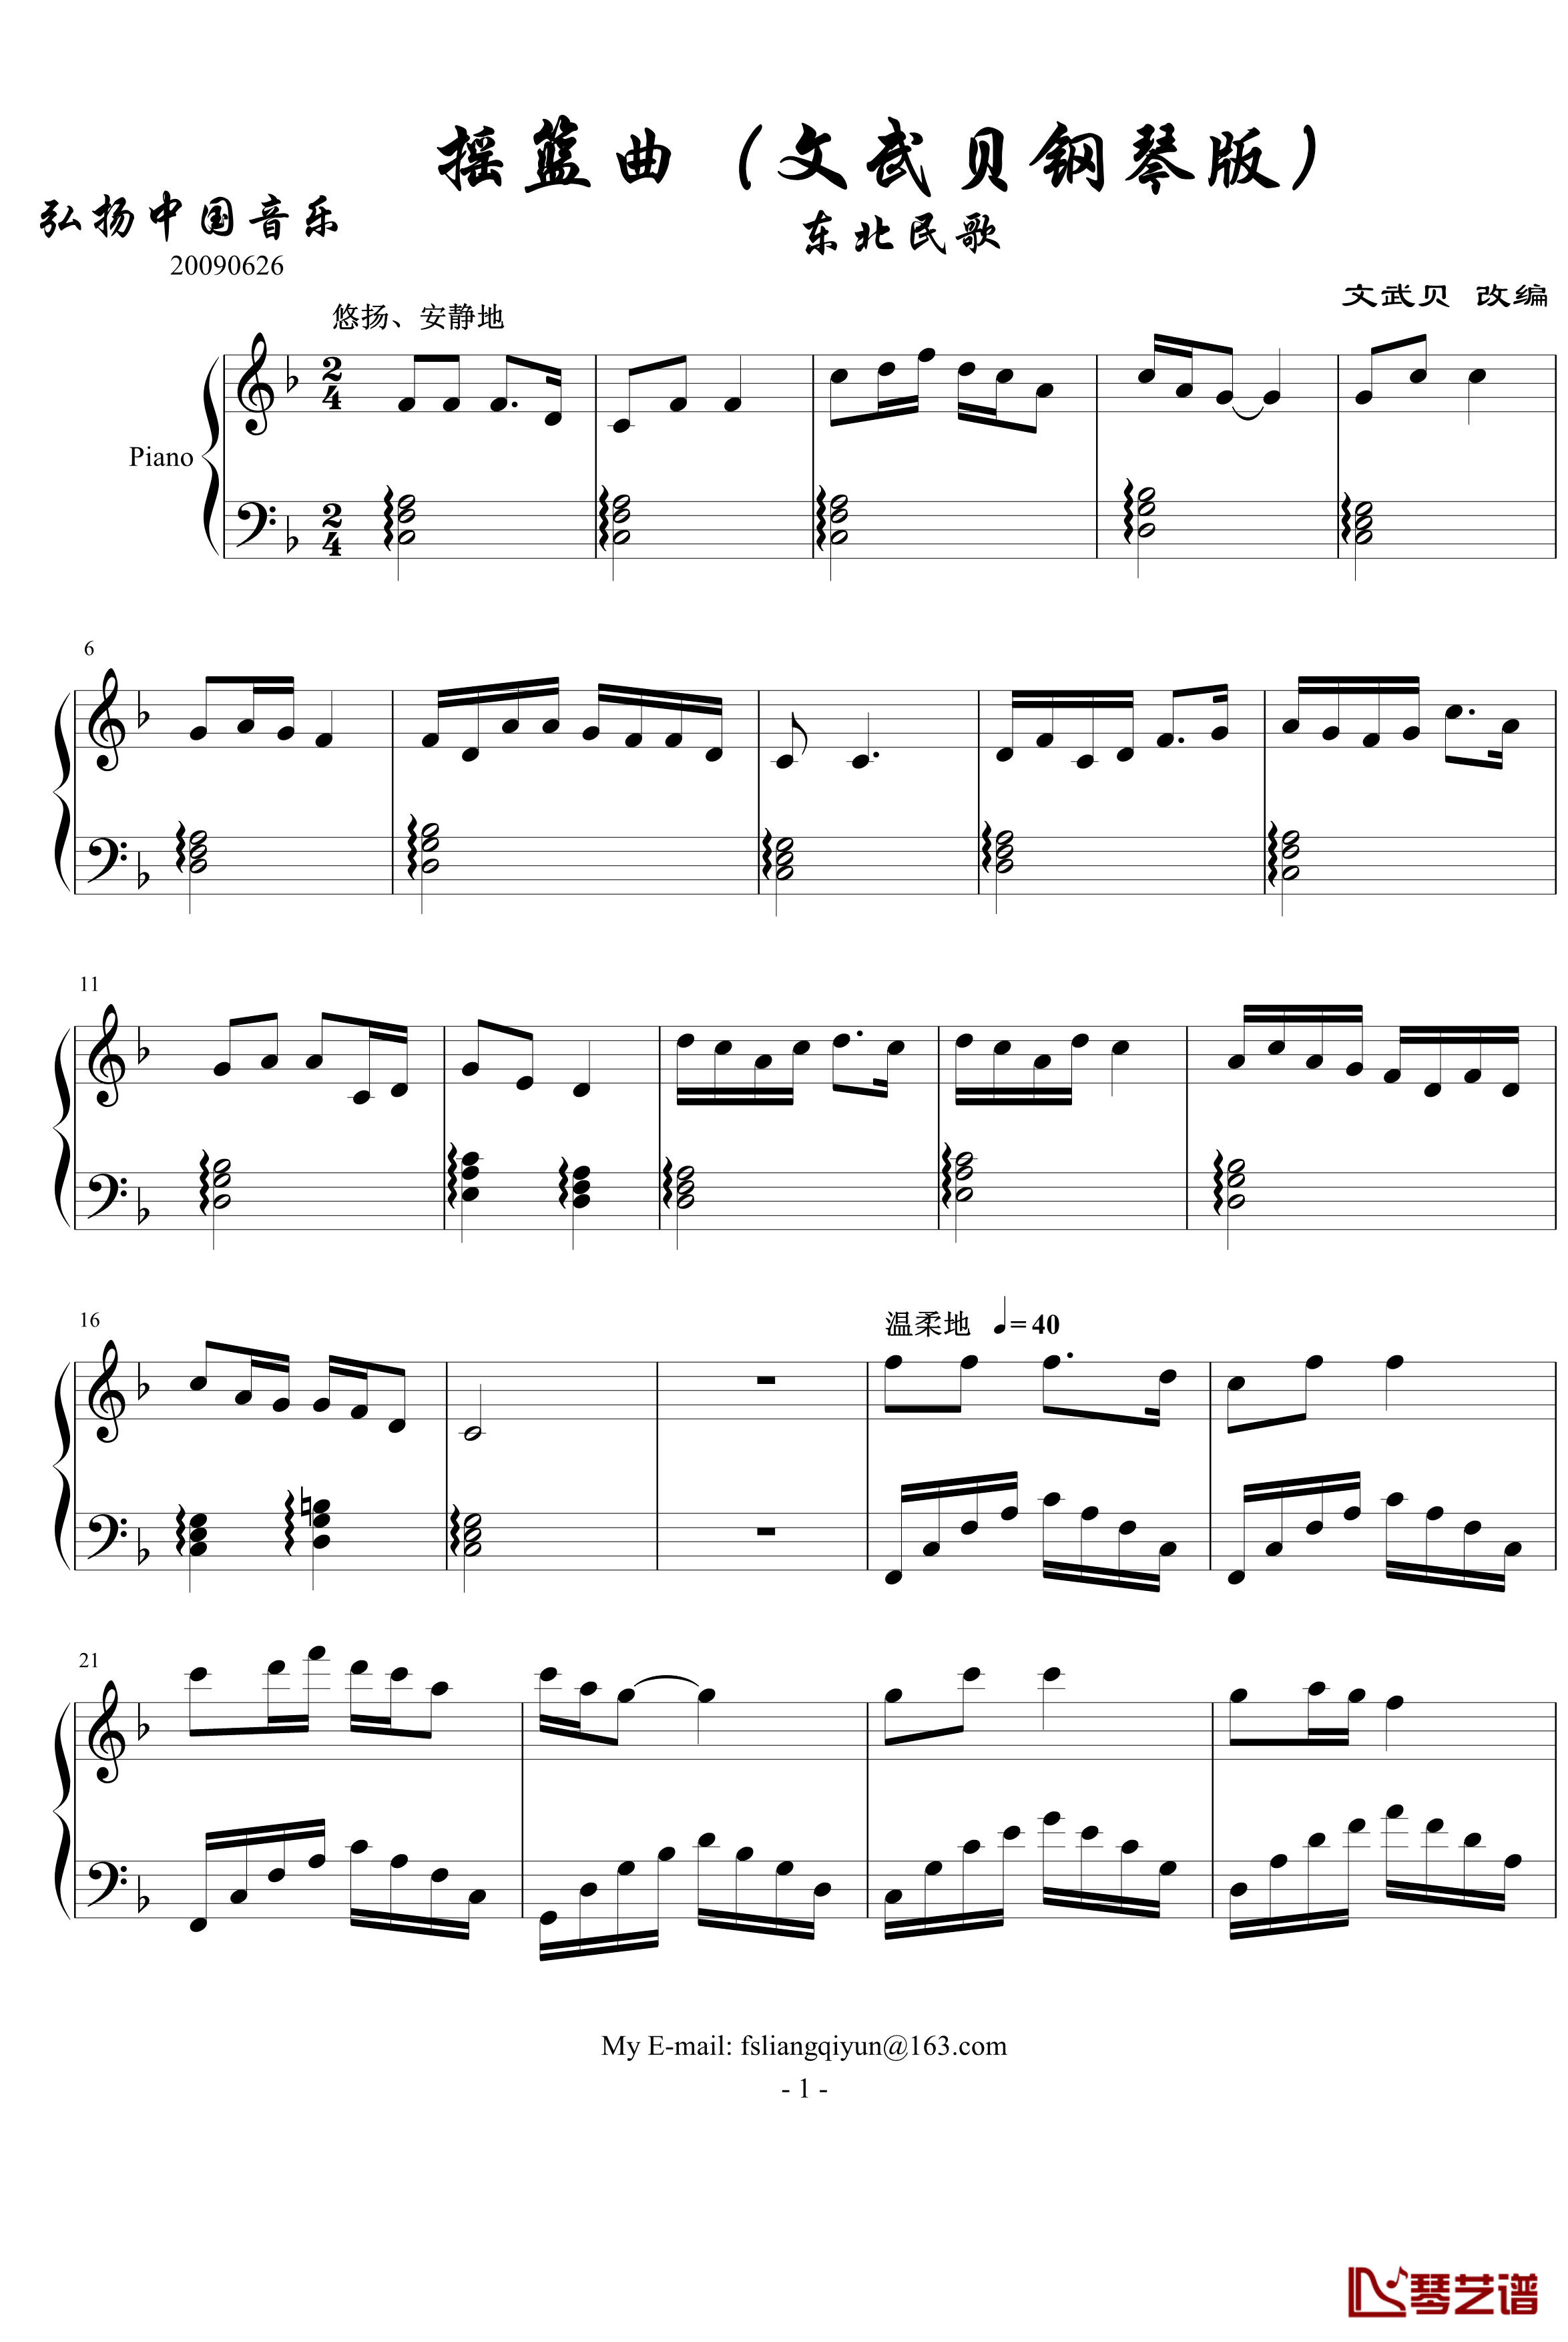 摇篮曲钢琴谱-文武贝钢琴版-中国名曲1